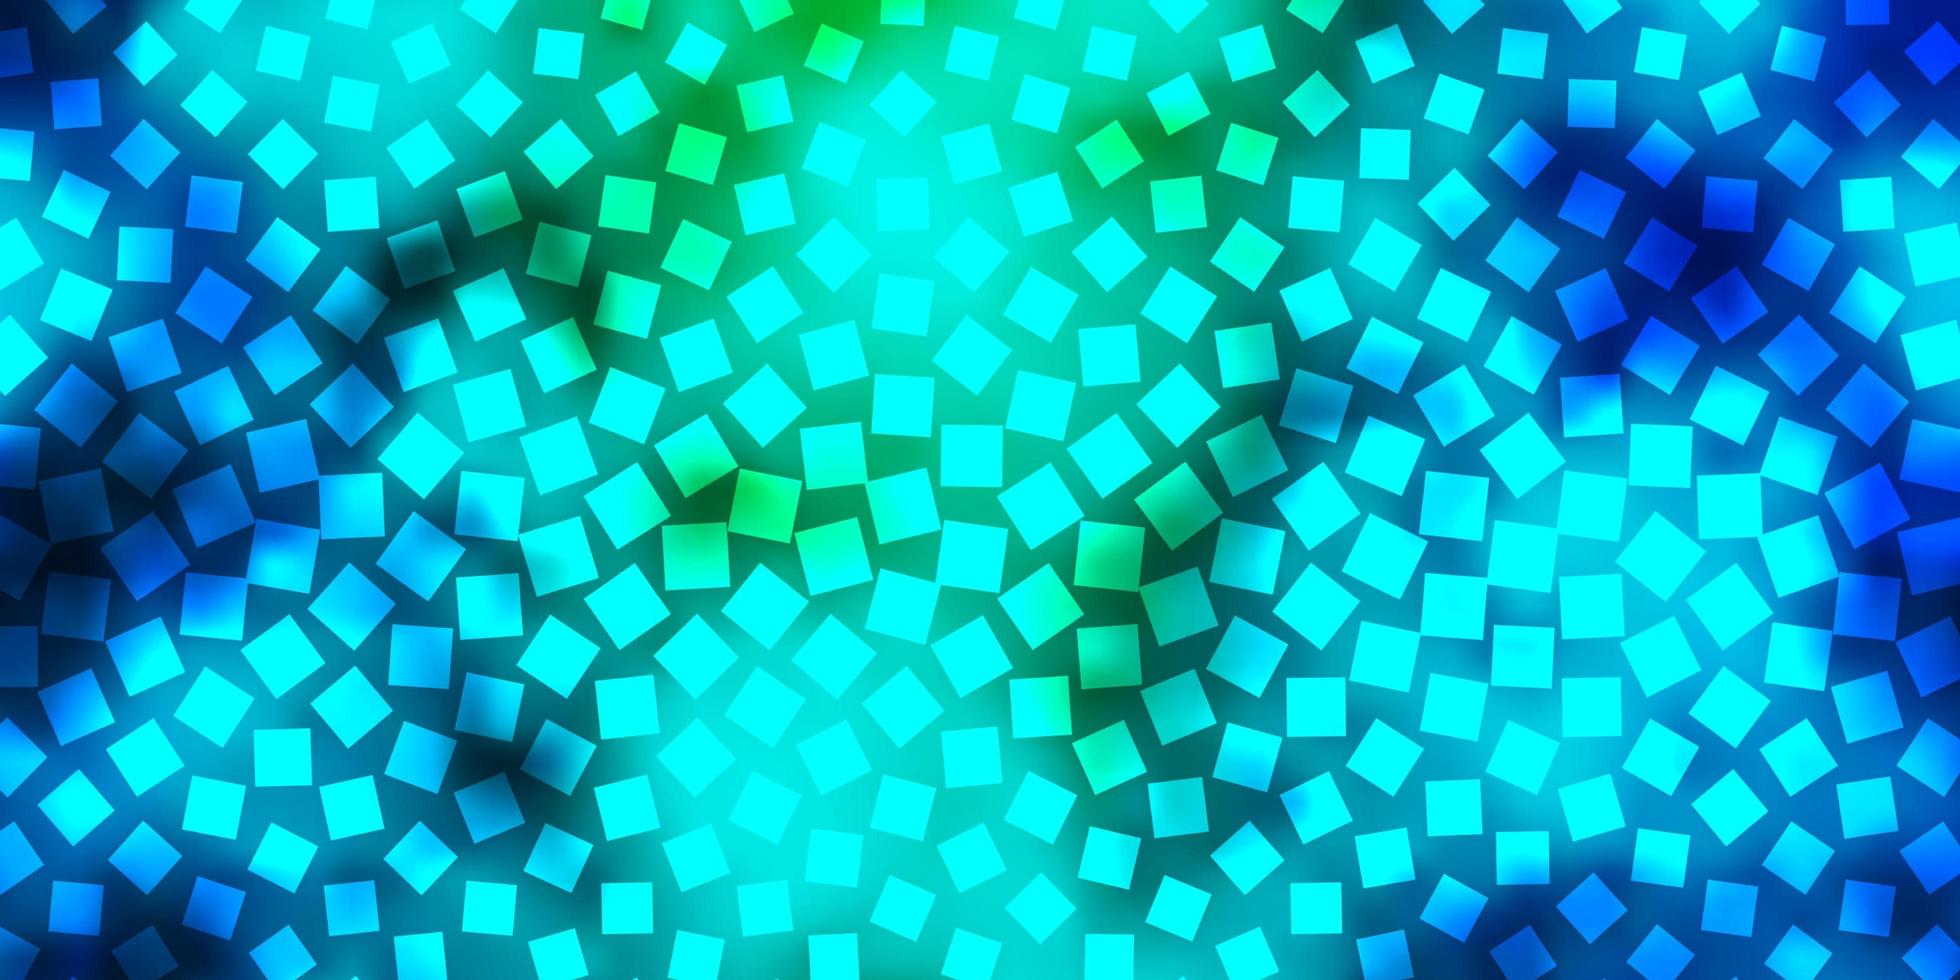 patrón de vector azul claro, verde en estilo cuadrado.